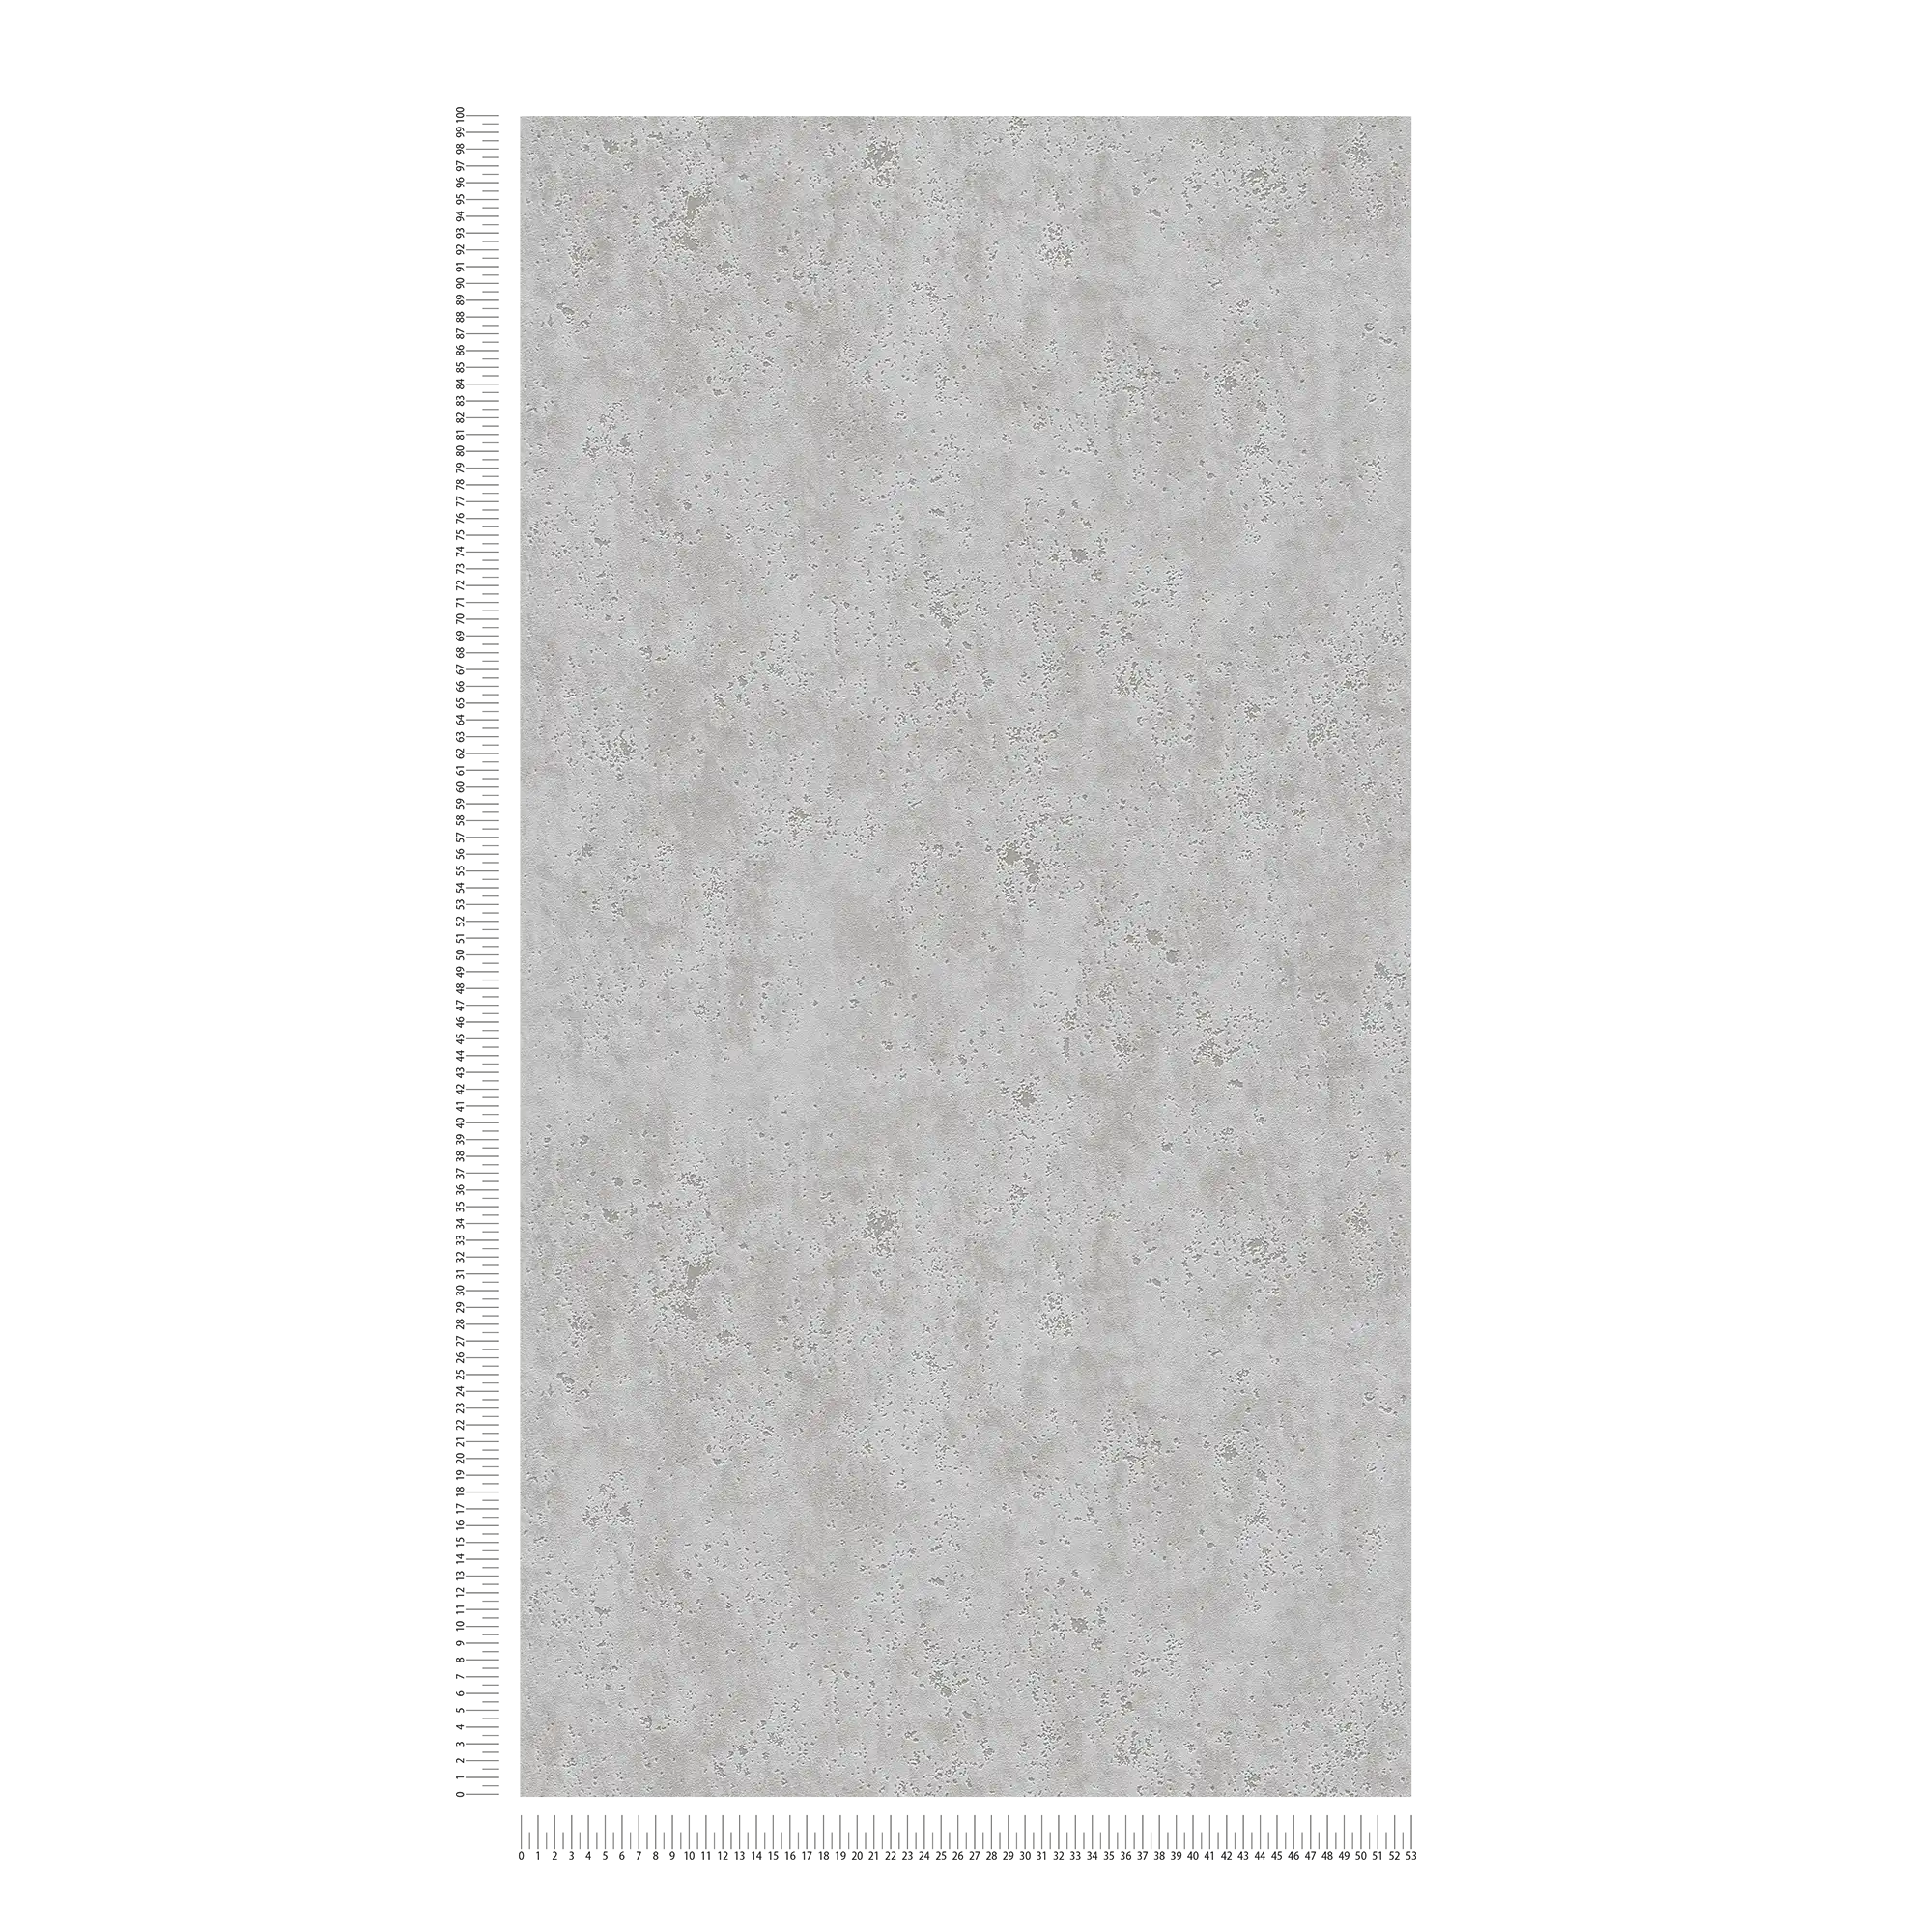             papel pintado con aspecto de yeso con textura de superficie rugosa - gris
        